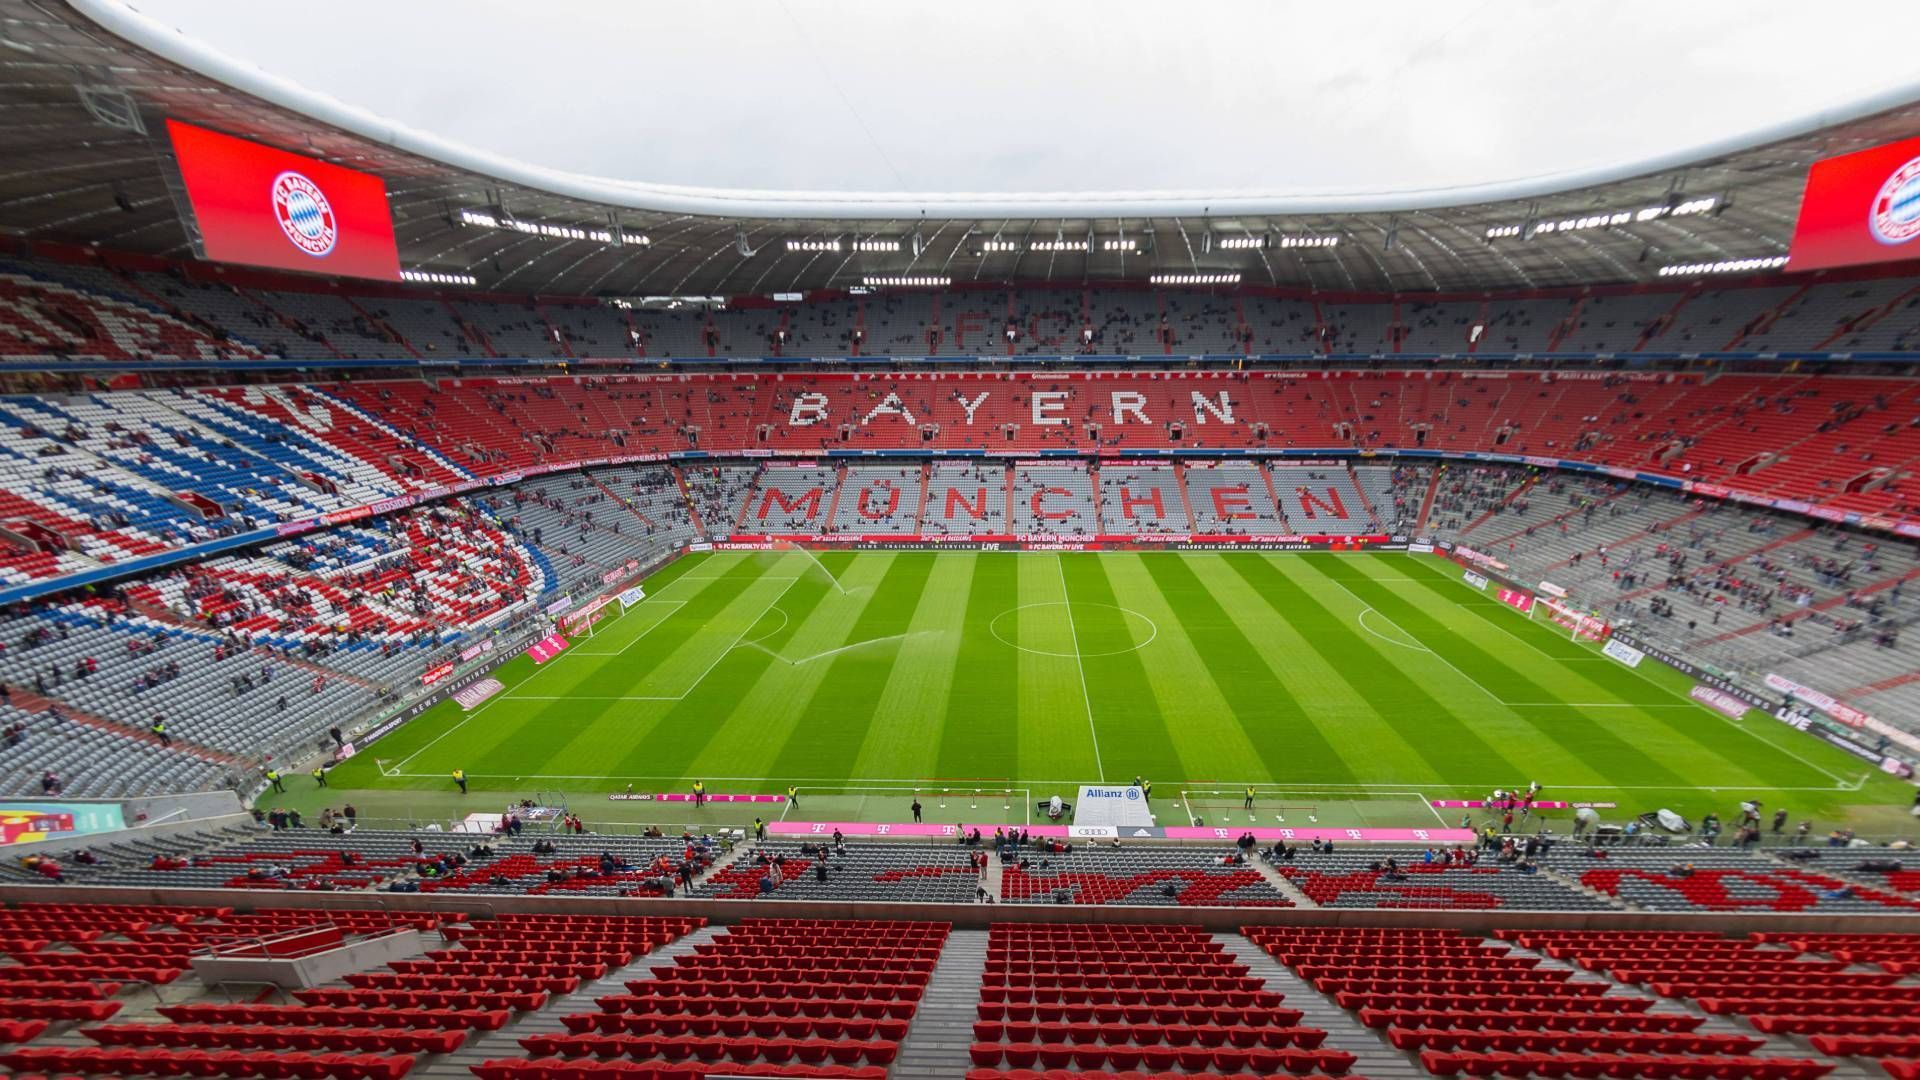 
                <strong>6. Platz: Allianz Arena (FC Bayern München; 14 Punkte)</strong><br>
                Auch der FC Bayern hat seine Hausaufgaben gemacht und das vegane Angebot deutlich aufgestockt, wenngleich es noch nicht zur Tabellenspitze reicht. Curry Chunks mit Pommes, Chipotle Burger oder Falafel-Wraps haben die Münchner unter anderem zu bieten.
              